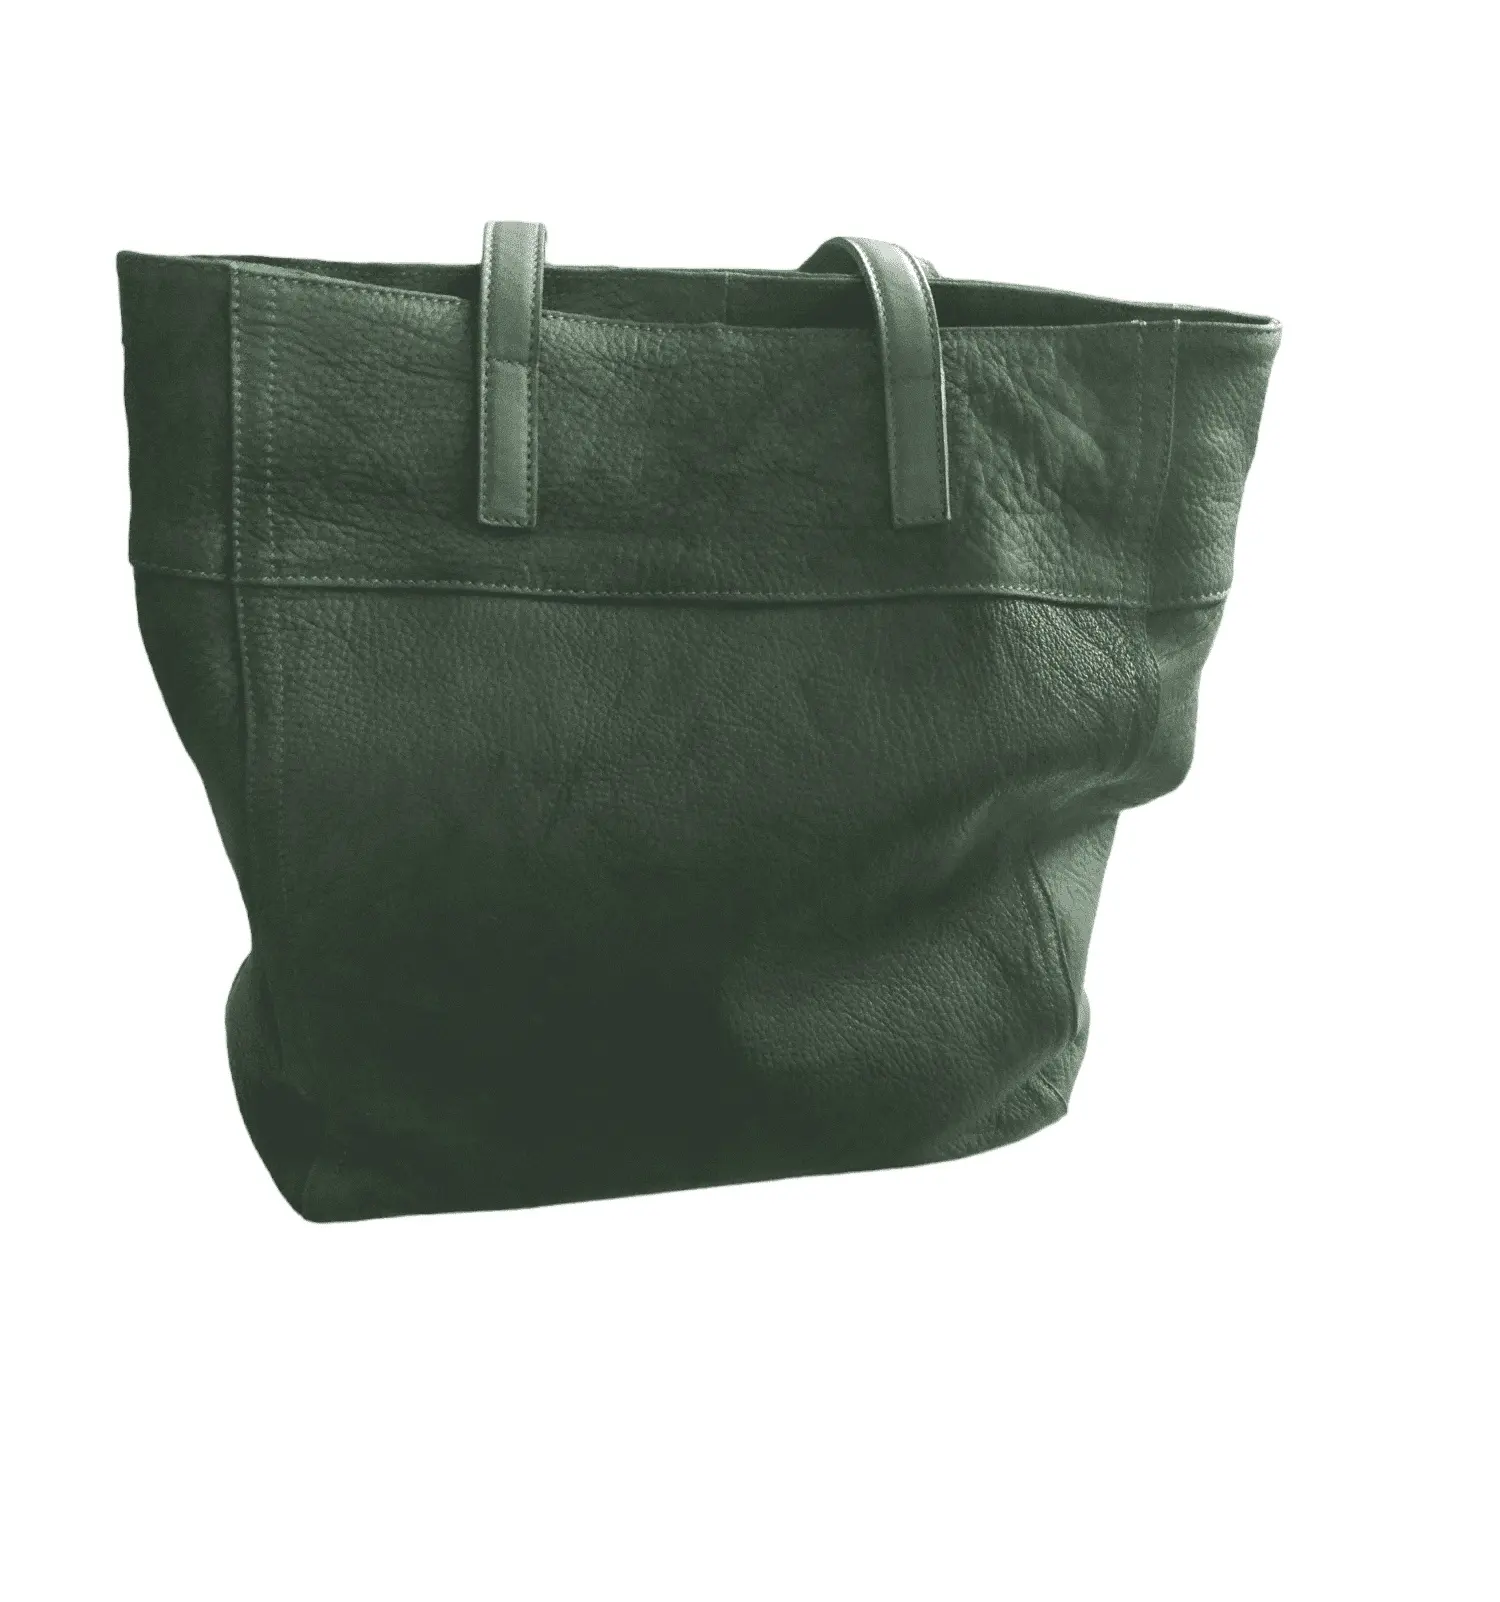 Tas Tote dalam kulit asli asli dengan buatan tangan di Italia warna berbeda tersedia banyak stok